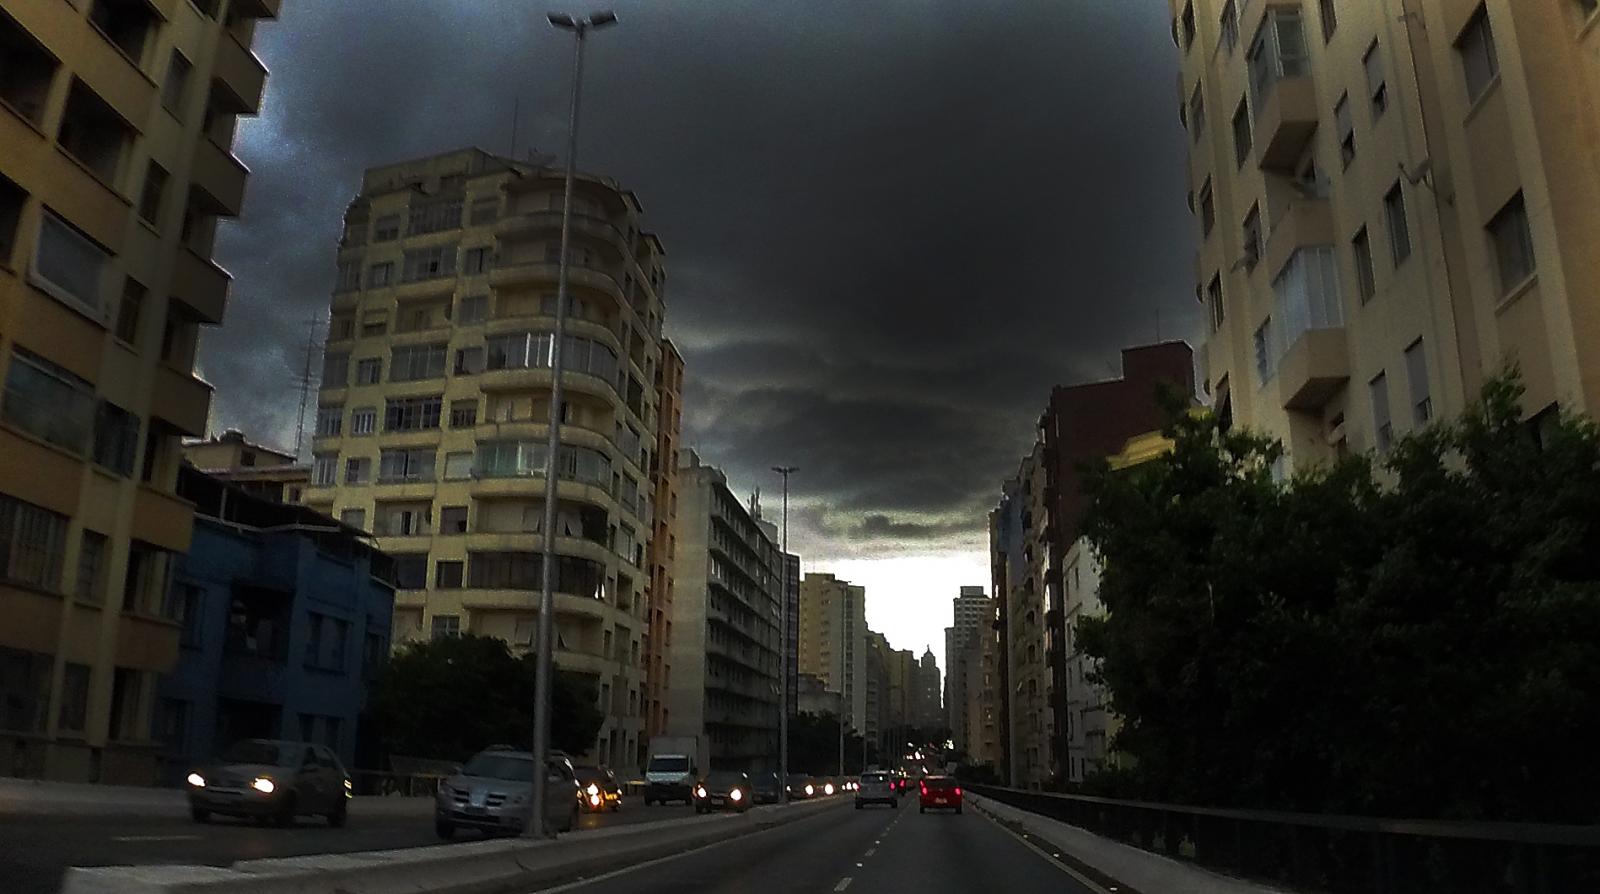 CPFL Paulista alerta sobre possíveis interrupções de energia com chuvas fortes nos próximos dias